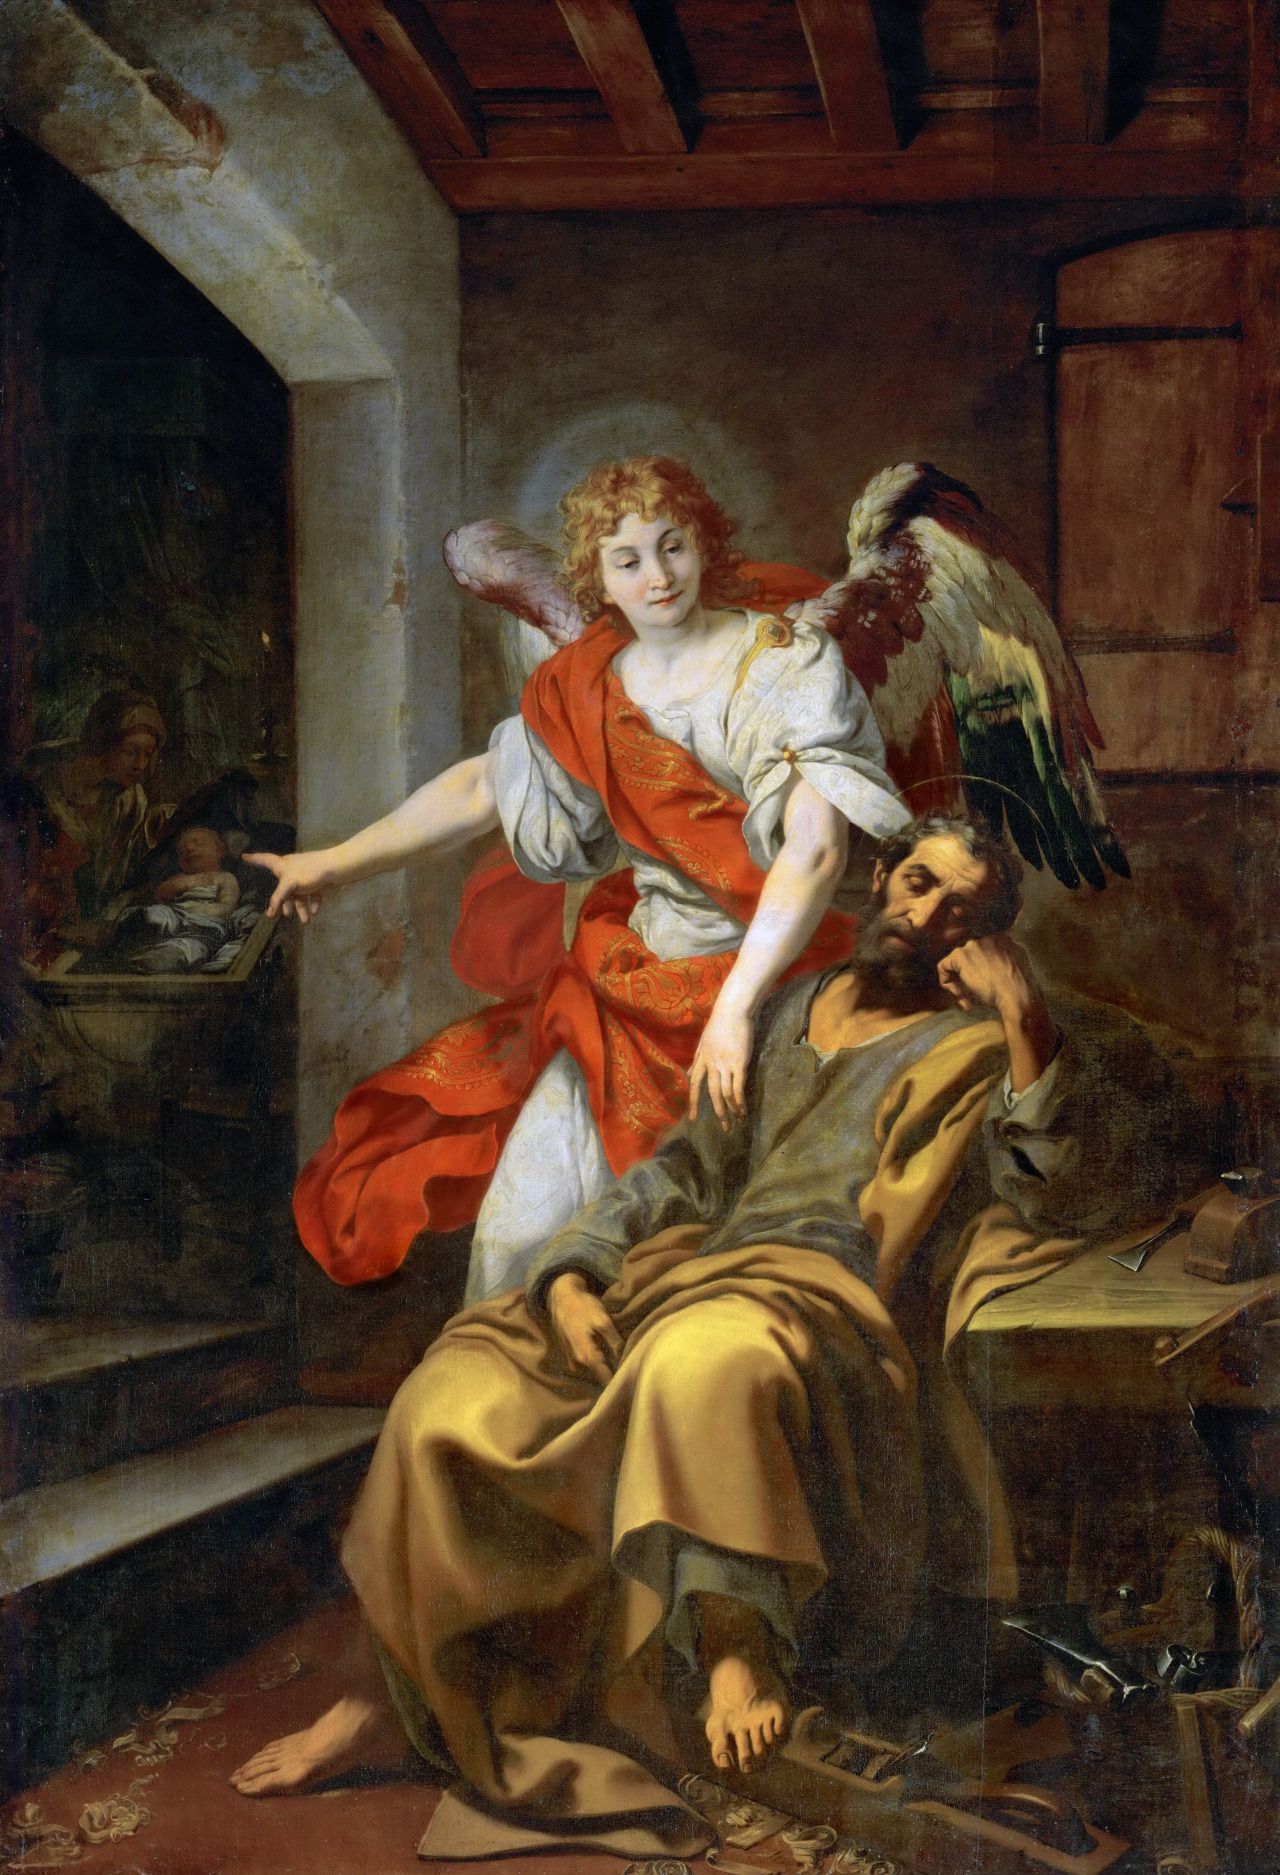 Extrait d'une peinture de Joseph recevant la visite d'un ange par Daniele Crespi 1590 - Kunsthistorisches Museum